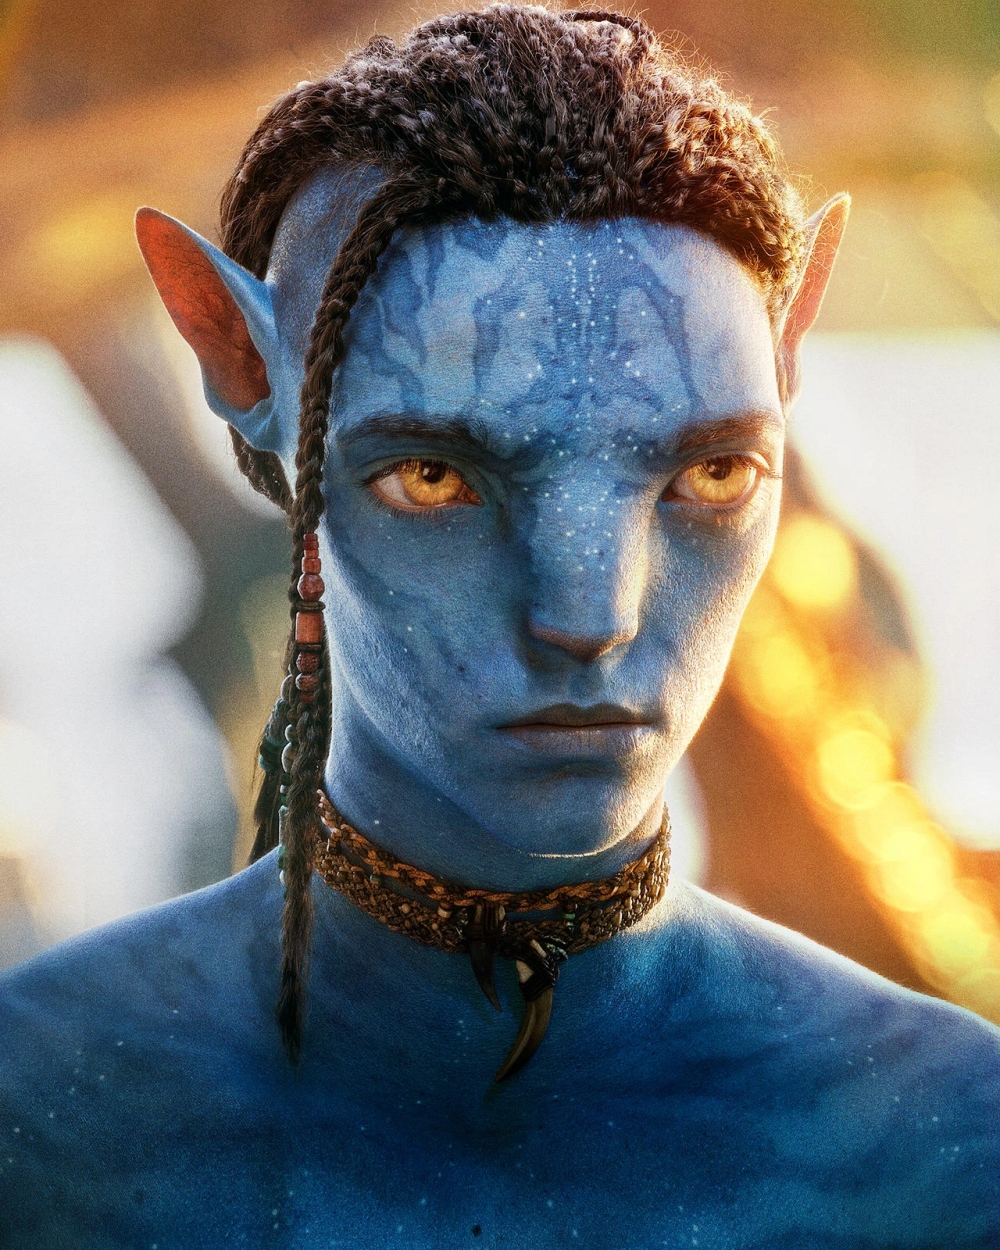 Avatar 2 đã hé lộ thông tin chính thức mới nhất về tuổi con cái của Jake Sully và Neytiri. Sự trở lại này đang tạo nên cơn sốt cho giới yêu phim trên toàn thế giới. Hãy xem hình ảnh liên quan để tìm hiểu thêm về chi tiết này và chuẩn bị cho cuộc phiêu lưu của riêng mình.